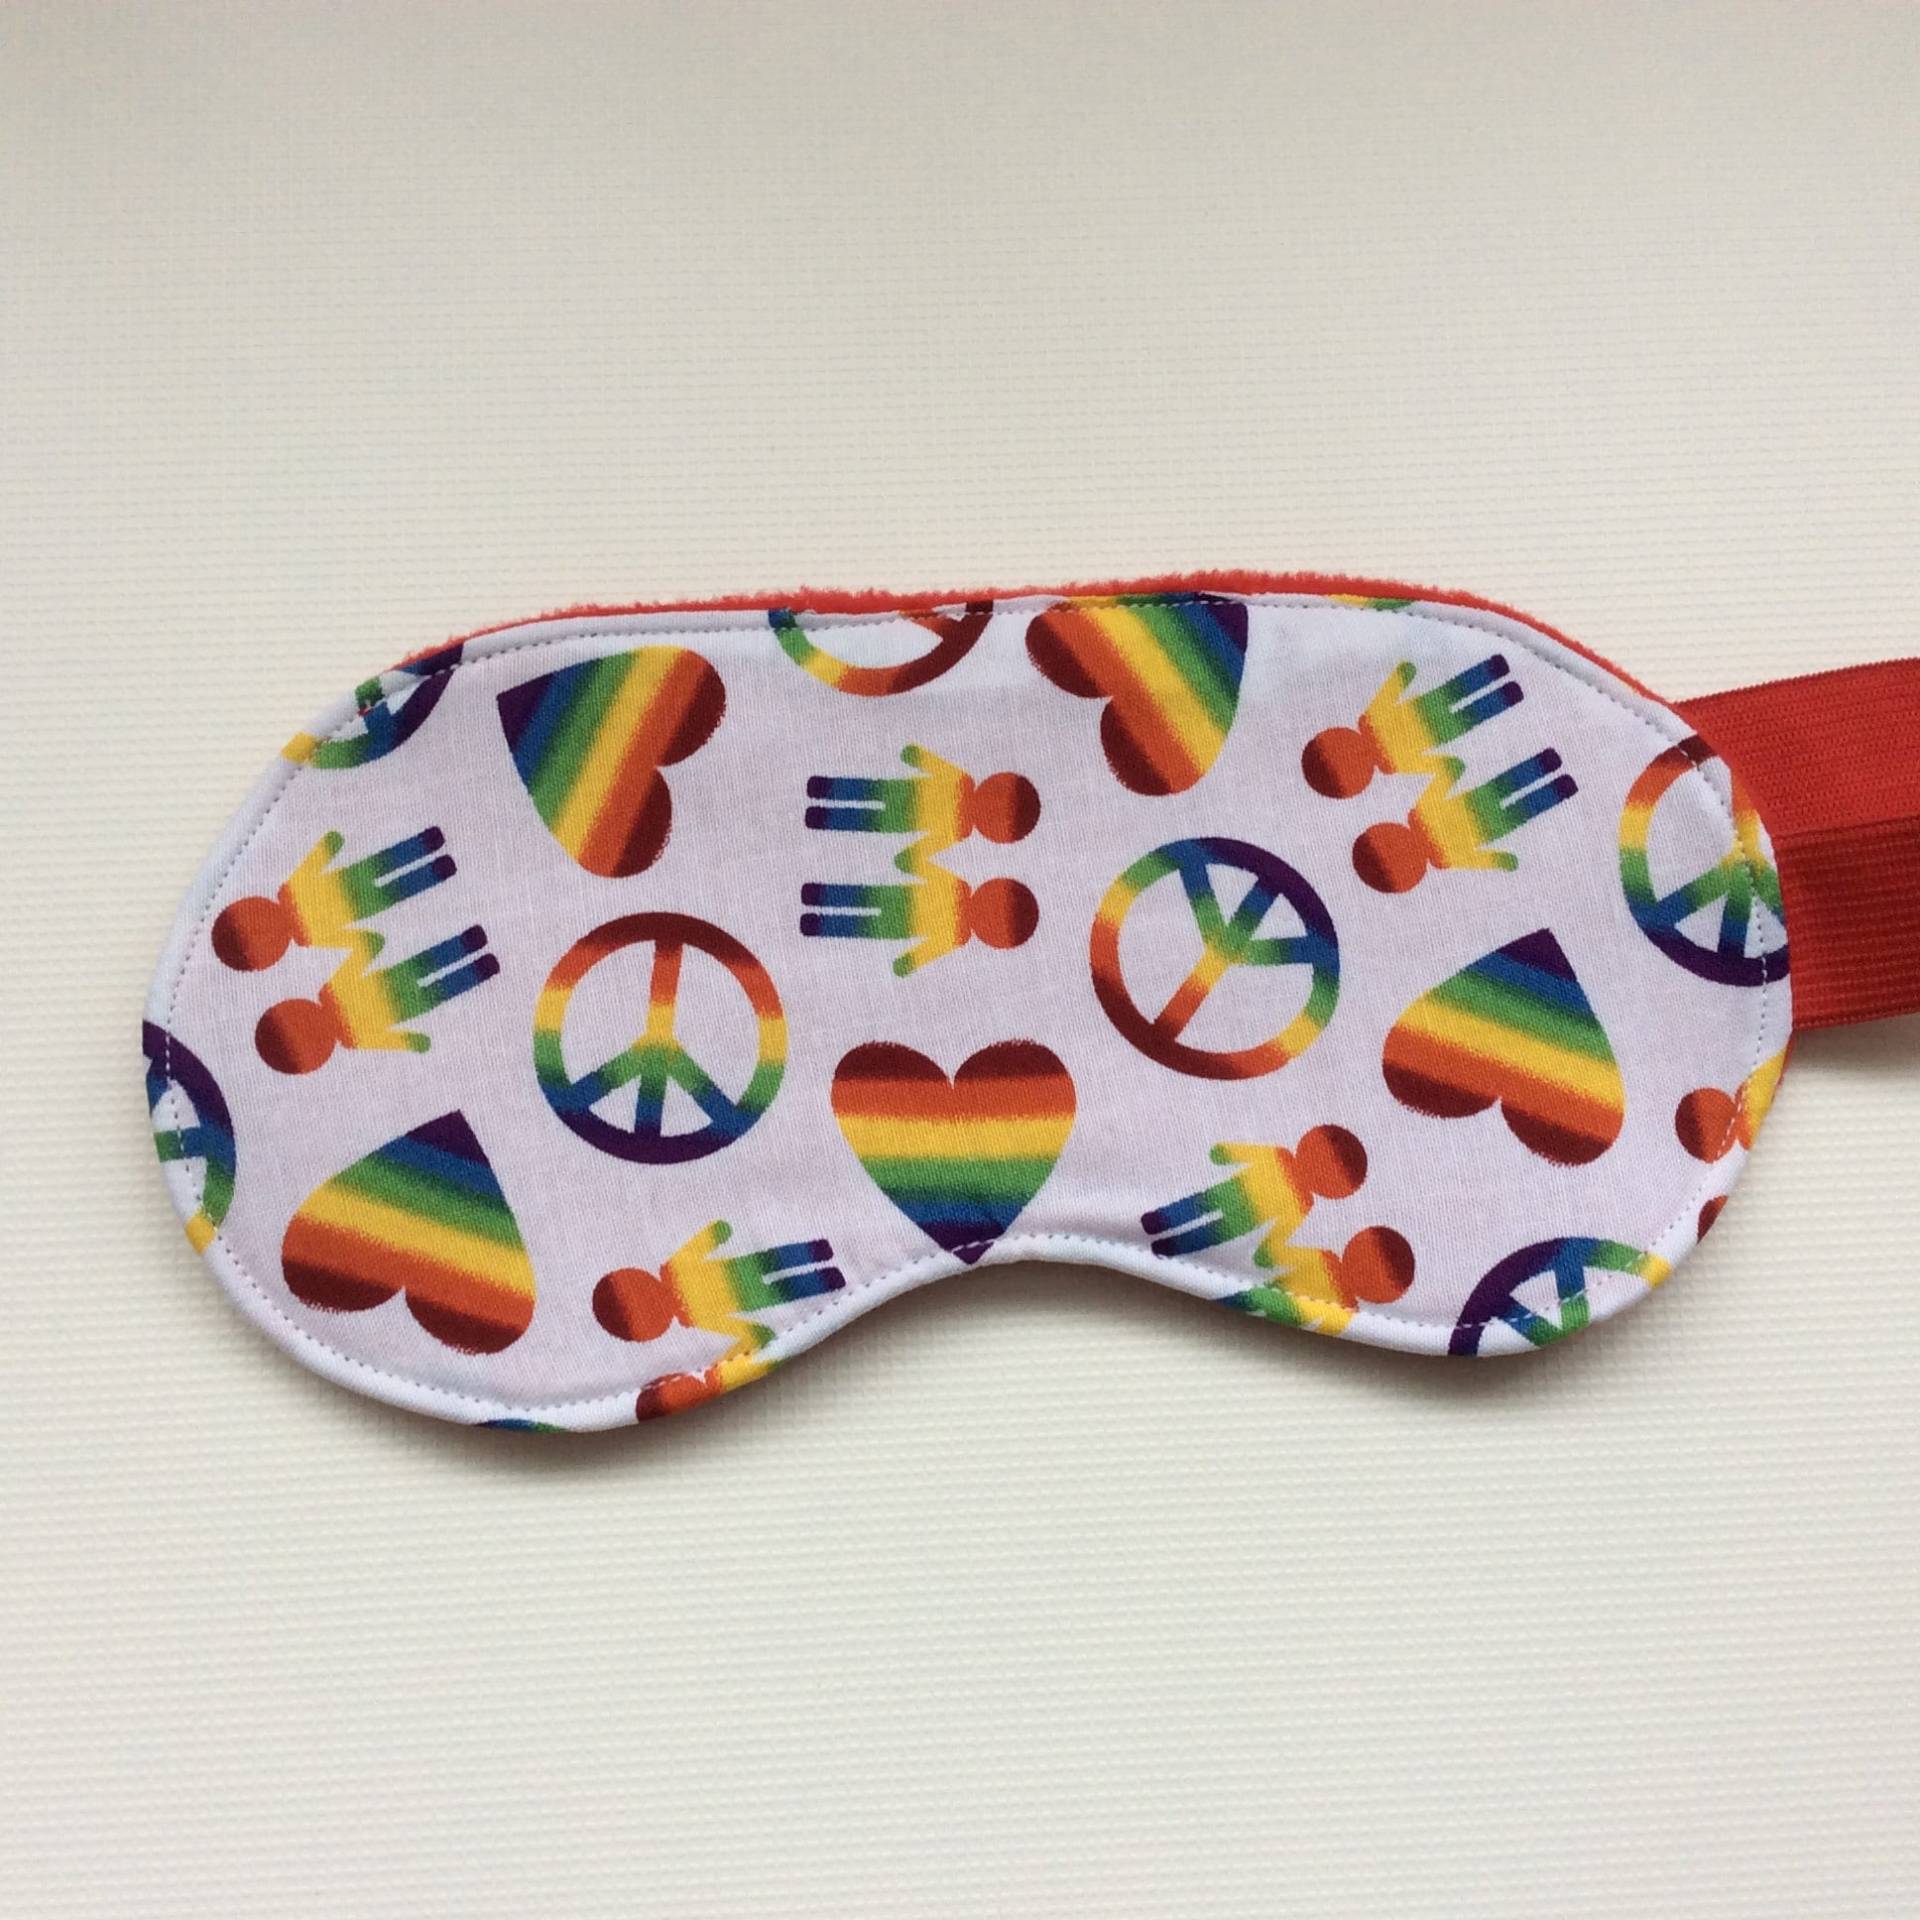 Love & Pride Pride Schlafmaske, Augenmaske, Augenschirm, Reise Festival Eco Friendly Geschenk, Vegane Augenmaske von RagHagShop